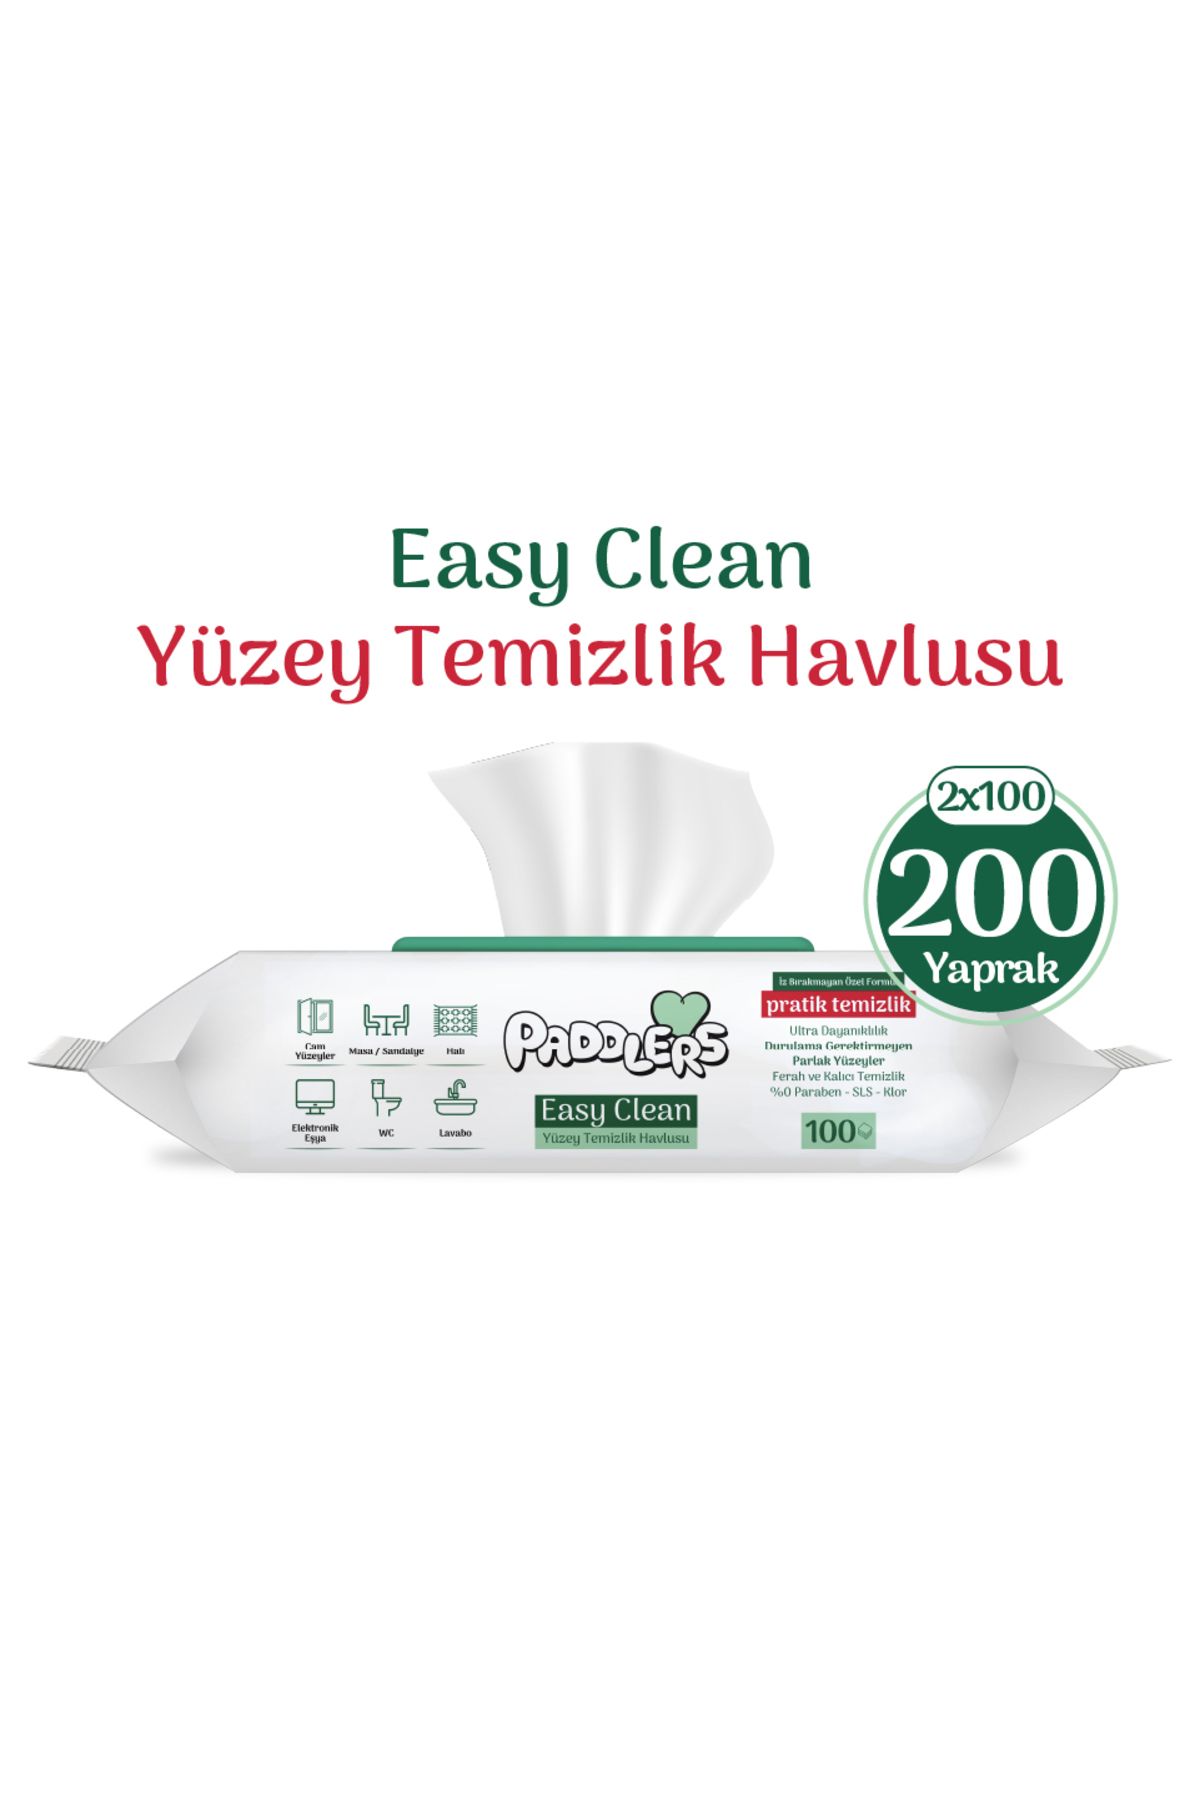 Paddlers Easy Clean Beyaz Sabun Katkılı Yüzey Temizlik Havlusu 2x100 (200 Yaprak)